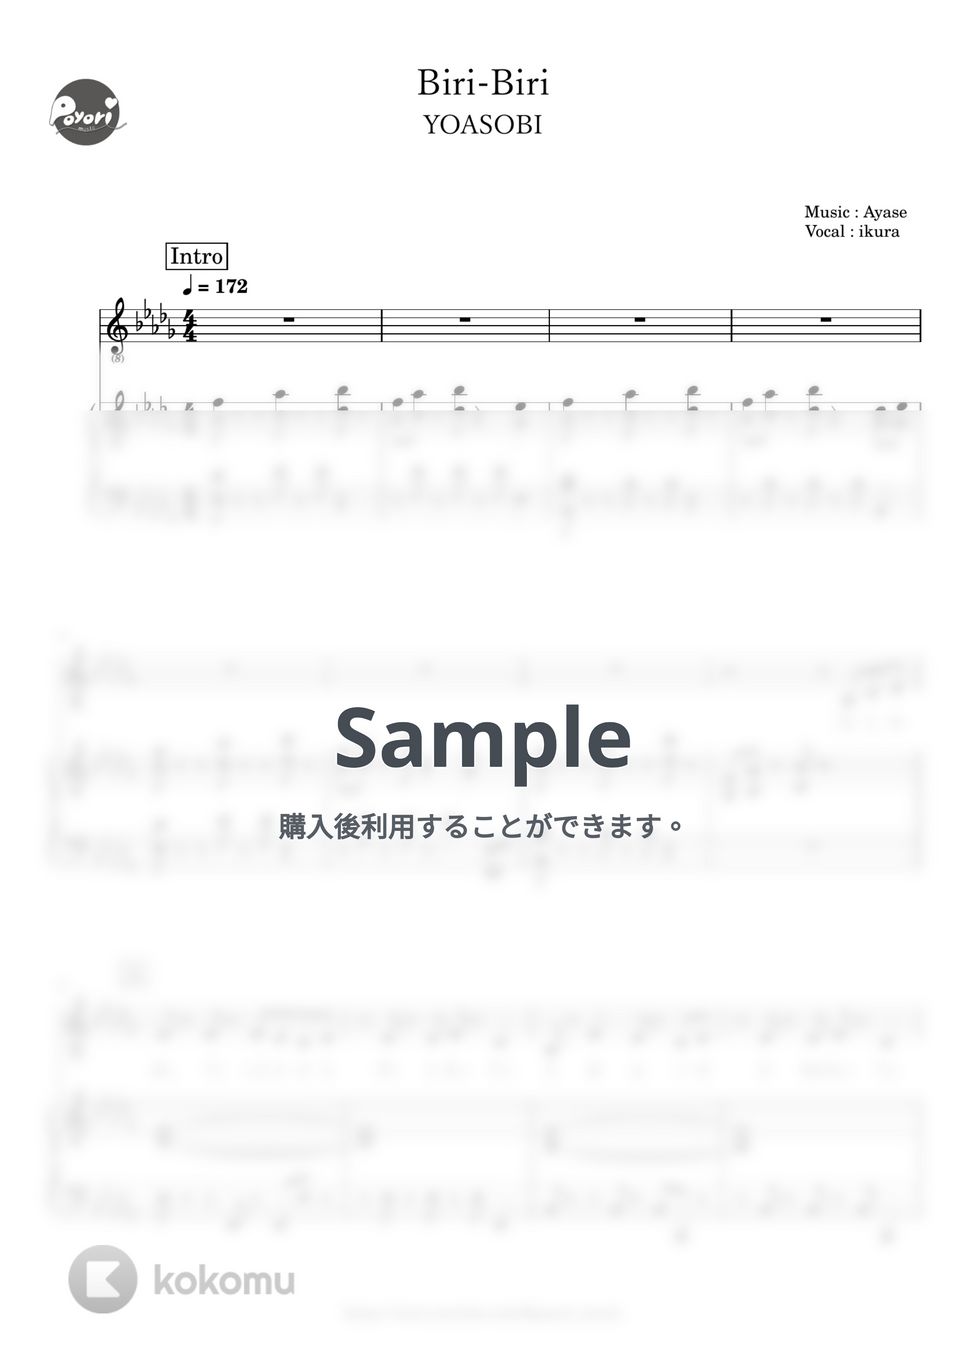 YOASOBI - Biri-Biri (ピアノ伴奏) by ぽより